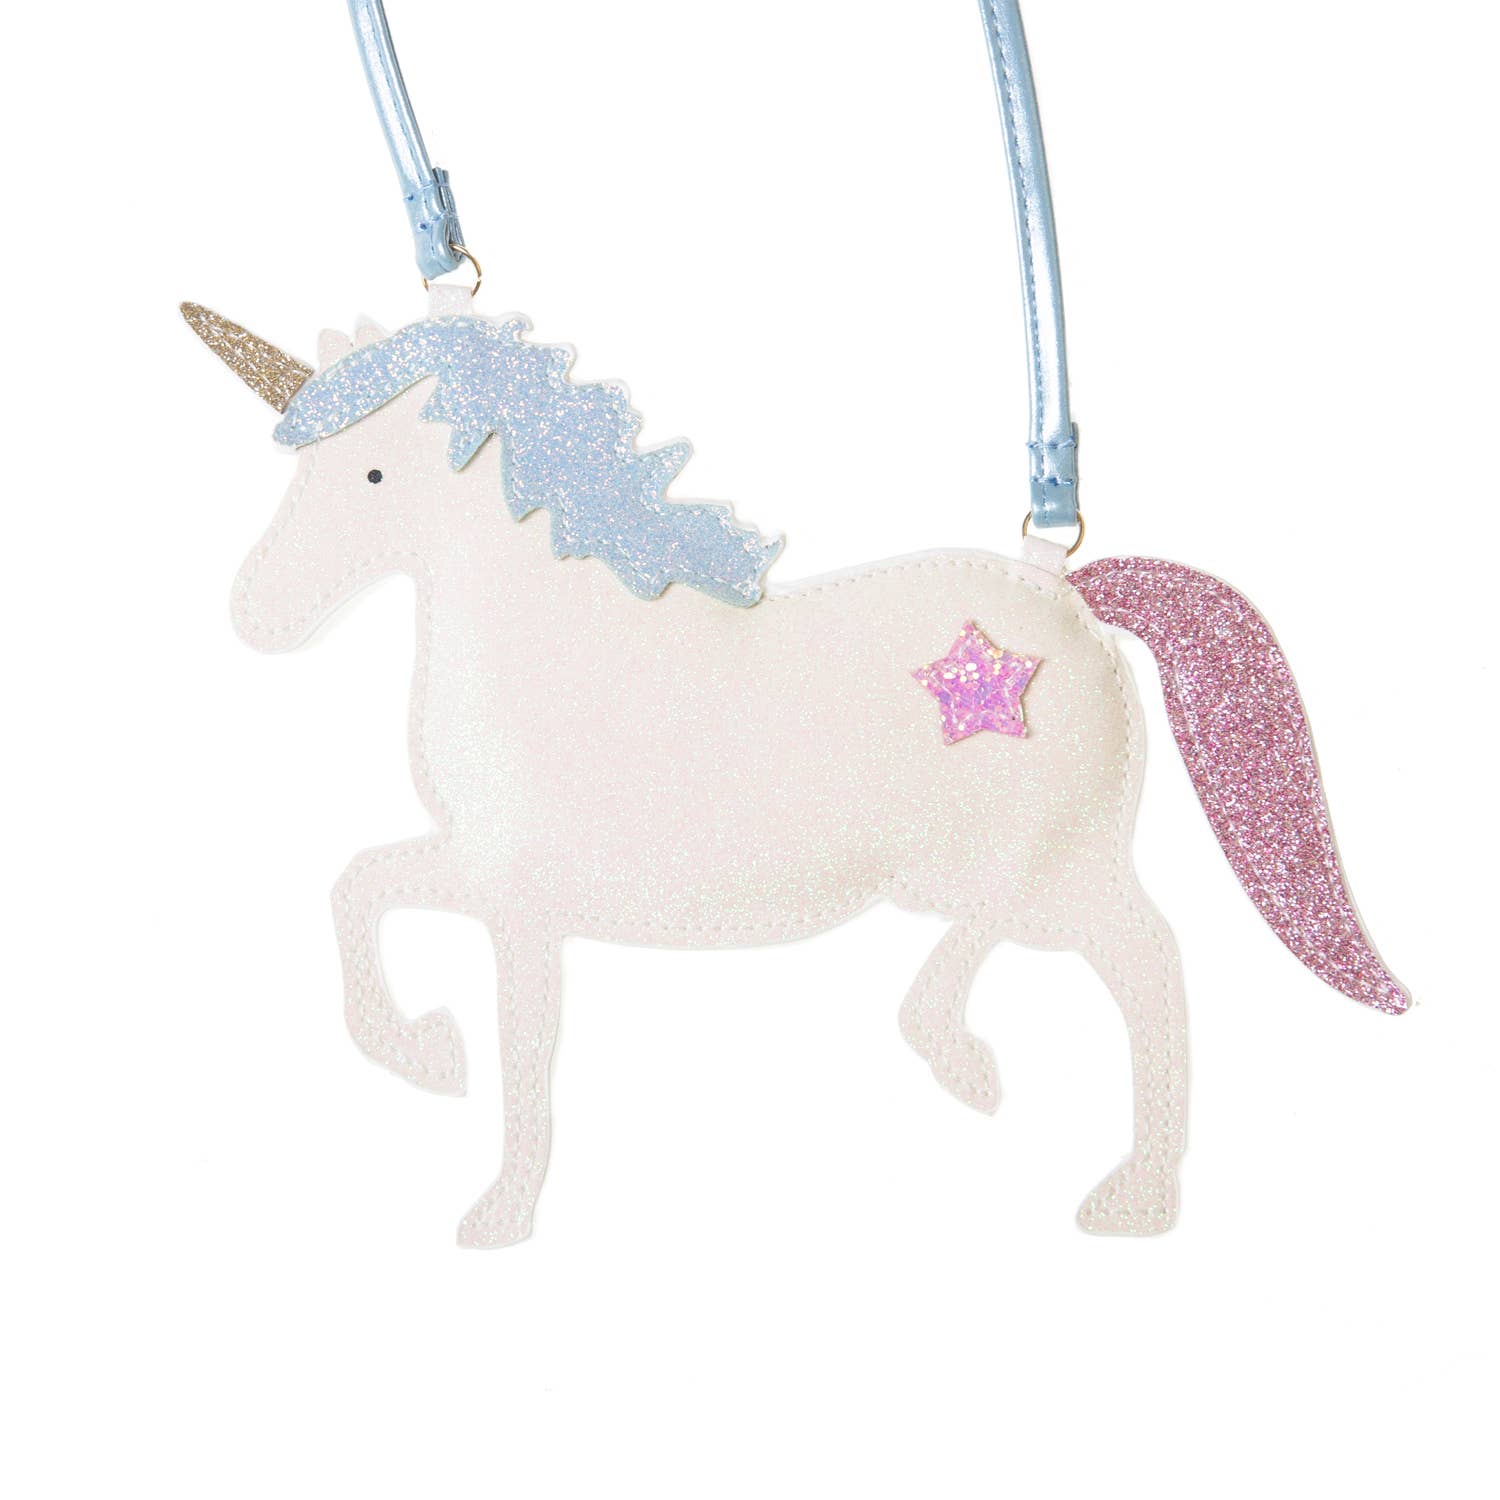 Unicorn Glitter Bag - Pretty Crafty Lady Shop